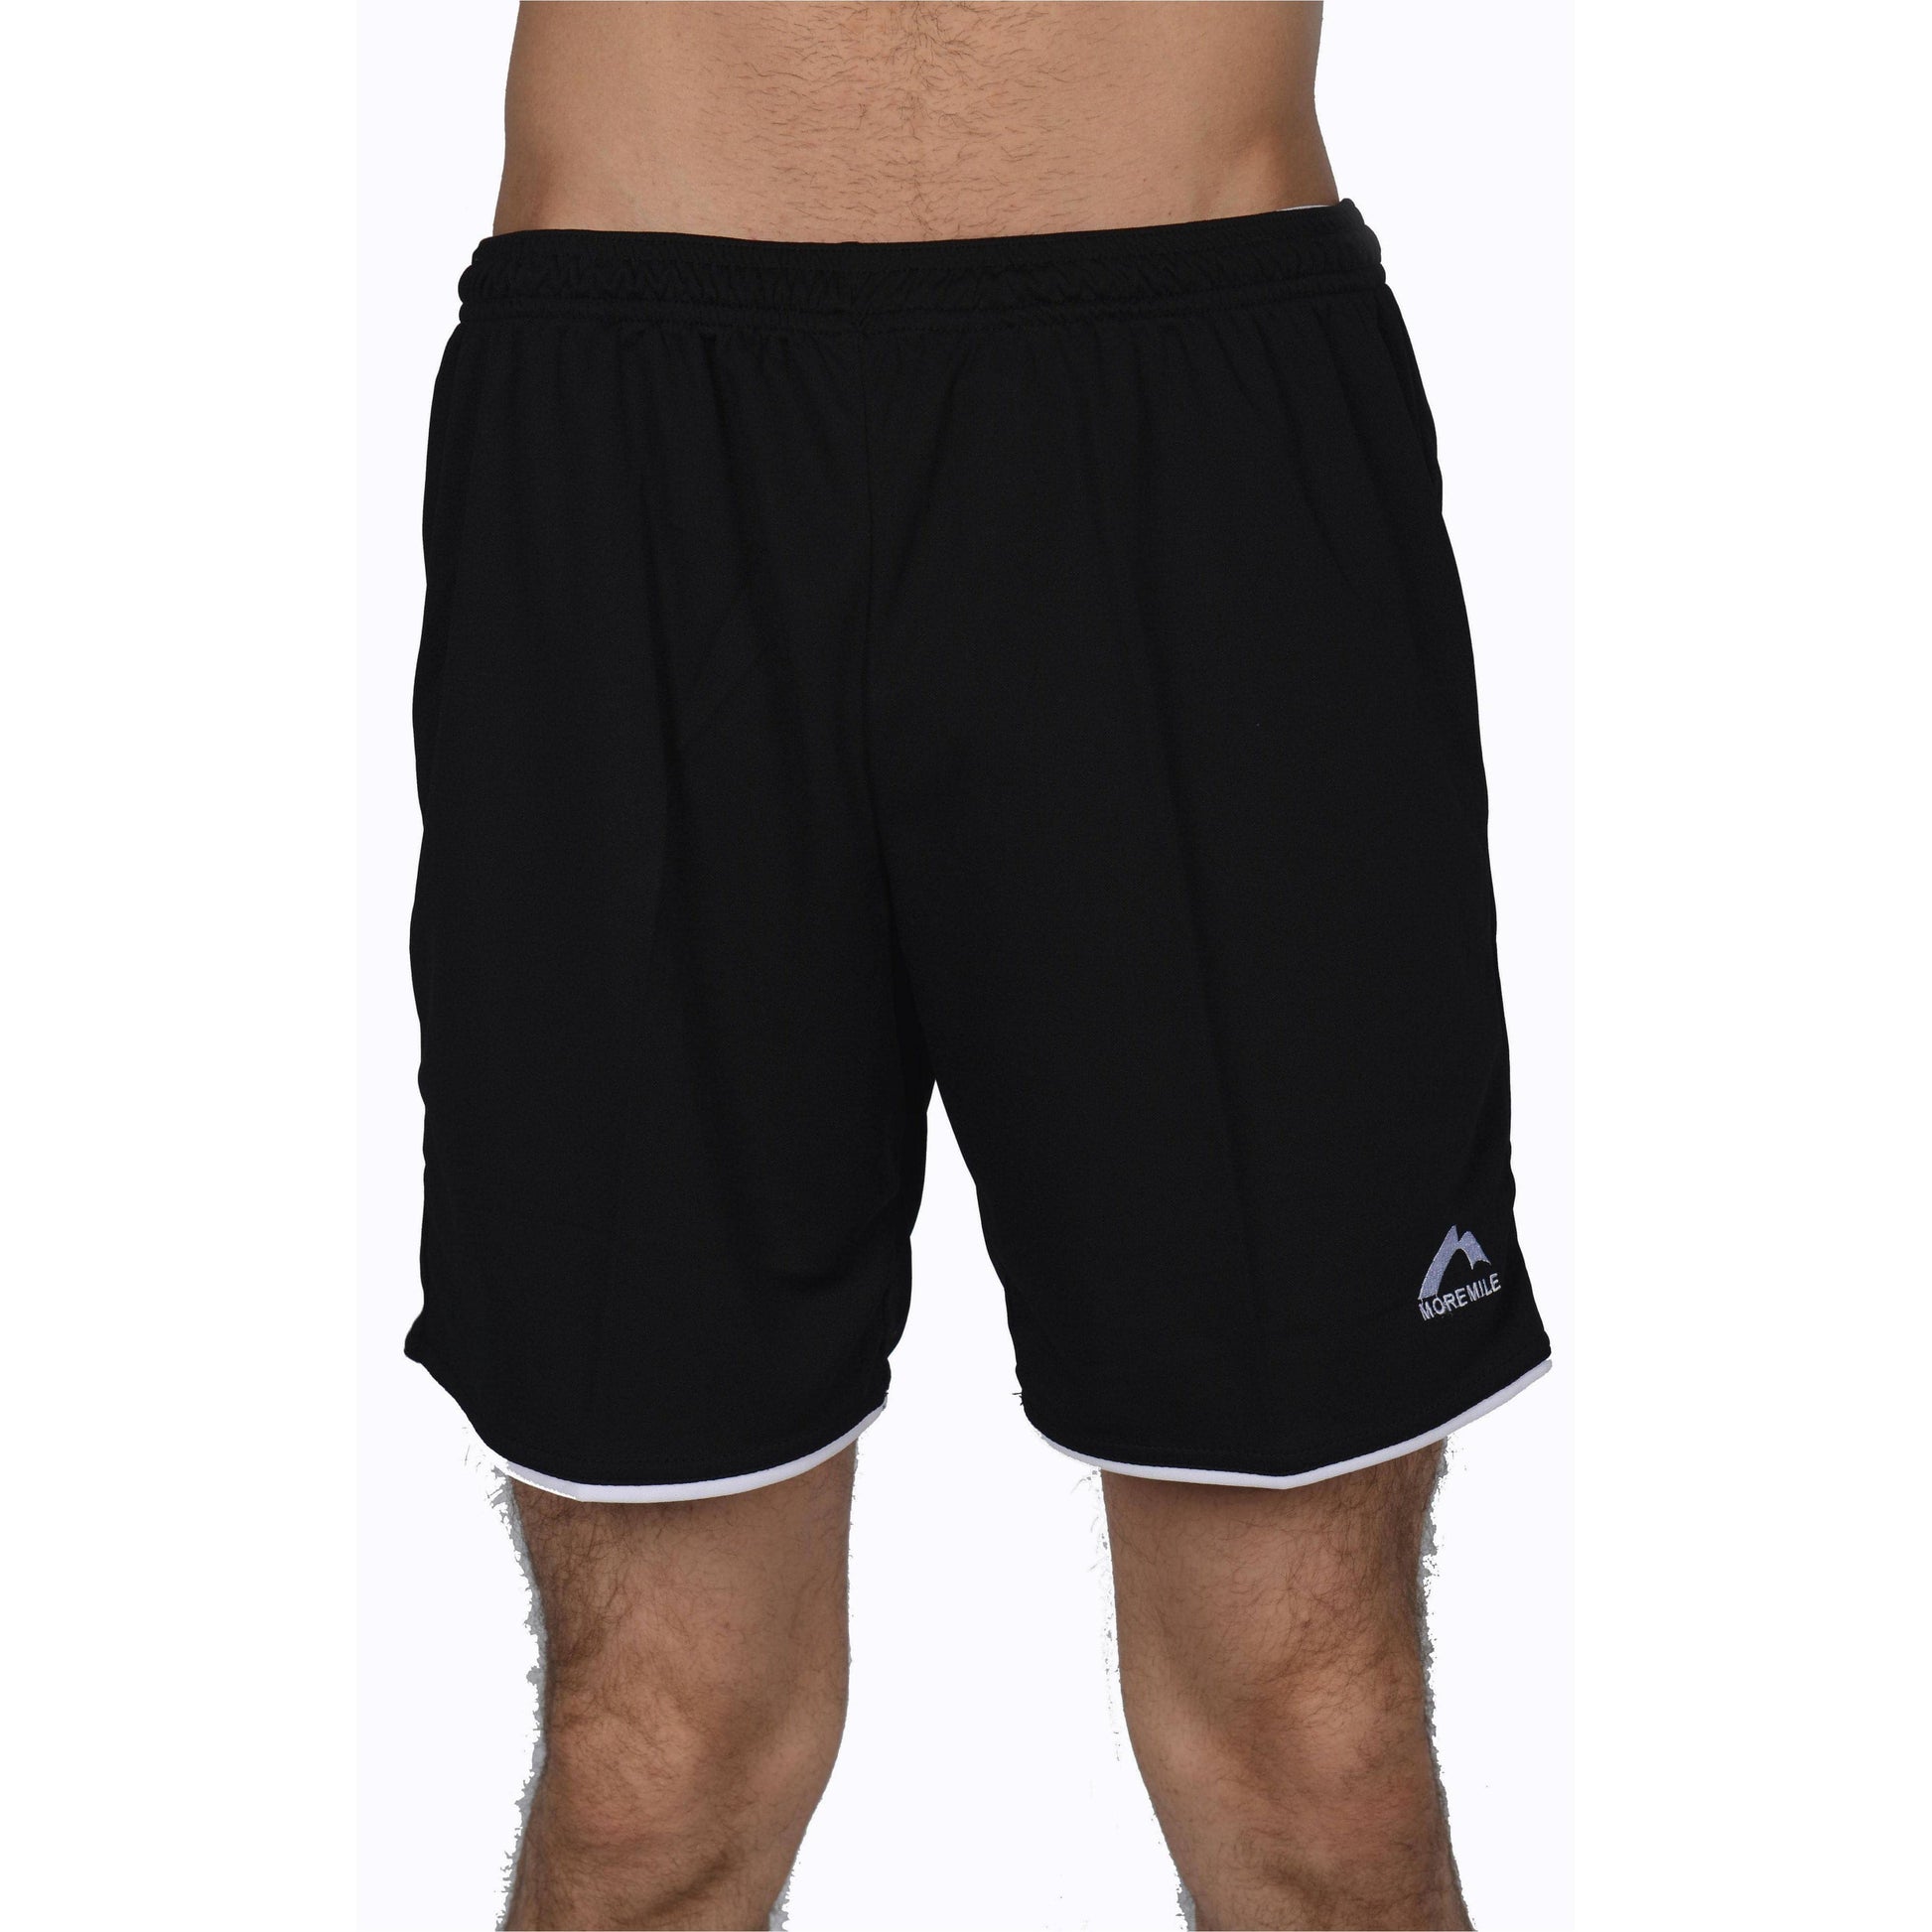 More Mile Premier Mens Football Shorts - Black 5055604337286 - Start Fitness